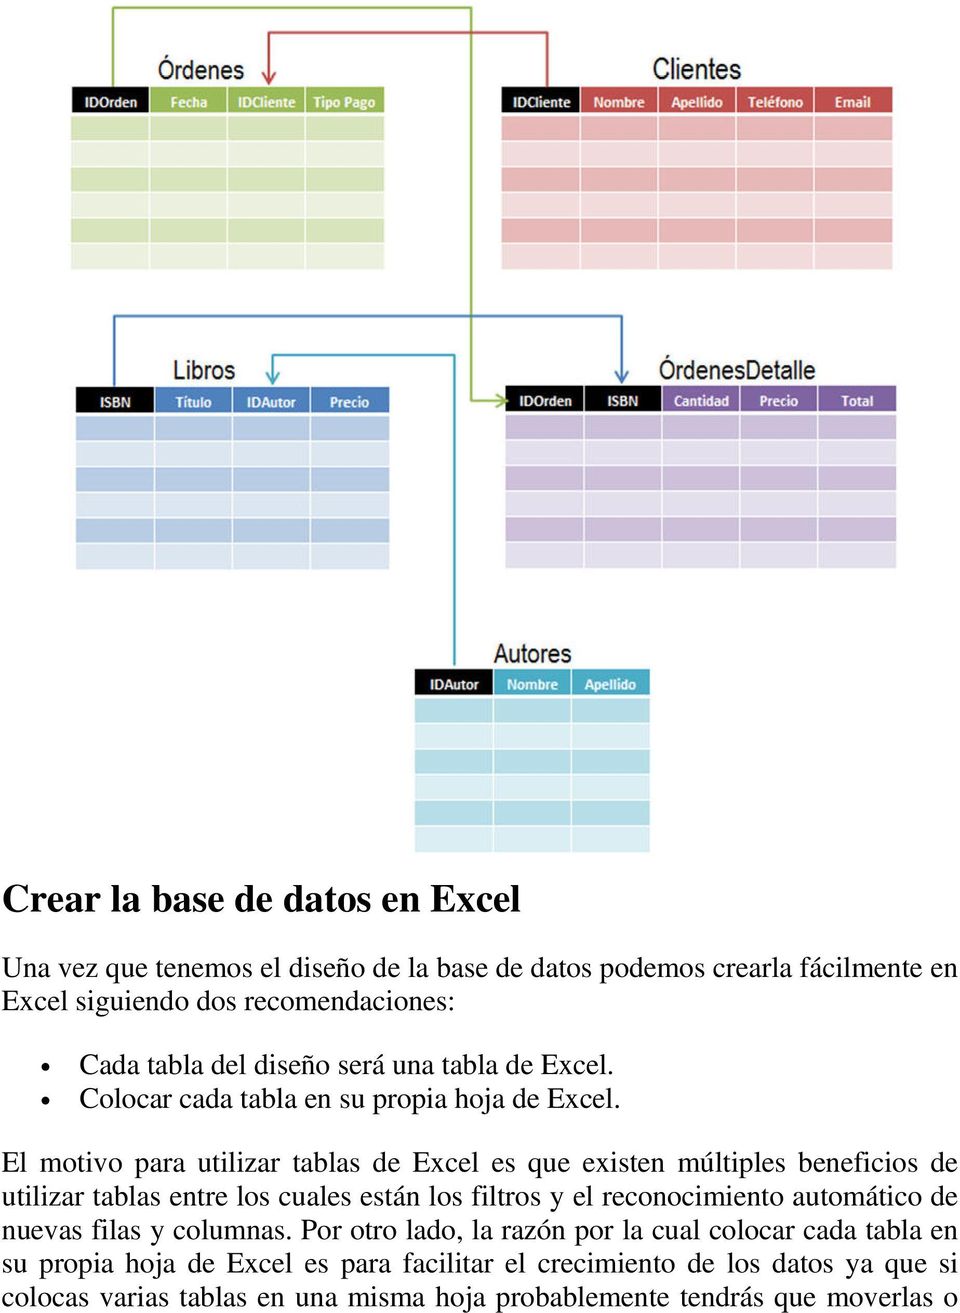 El motivo para utilizar tablas de Excel es que existen múltiples beneficios de utilizar tablas entre los cuales están los filtros y el reconocimiento automático